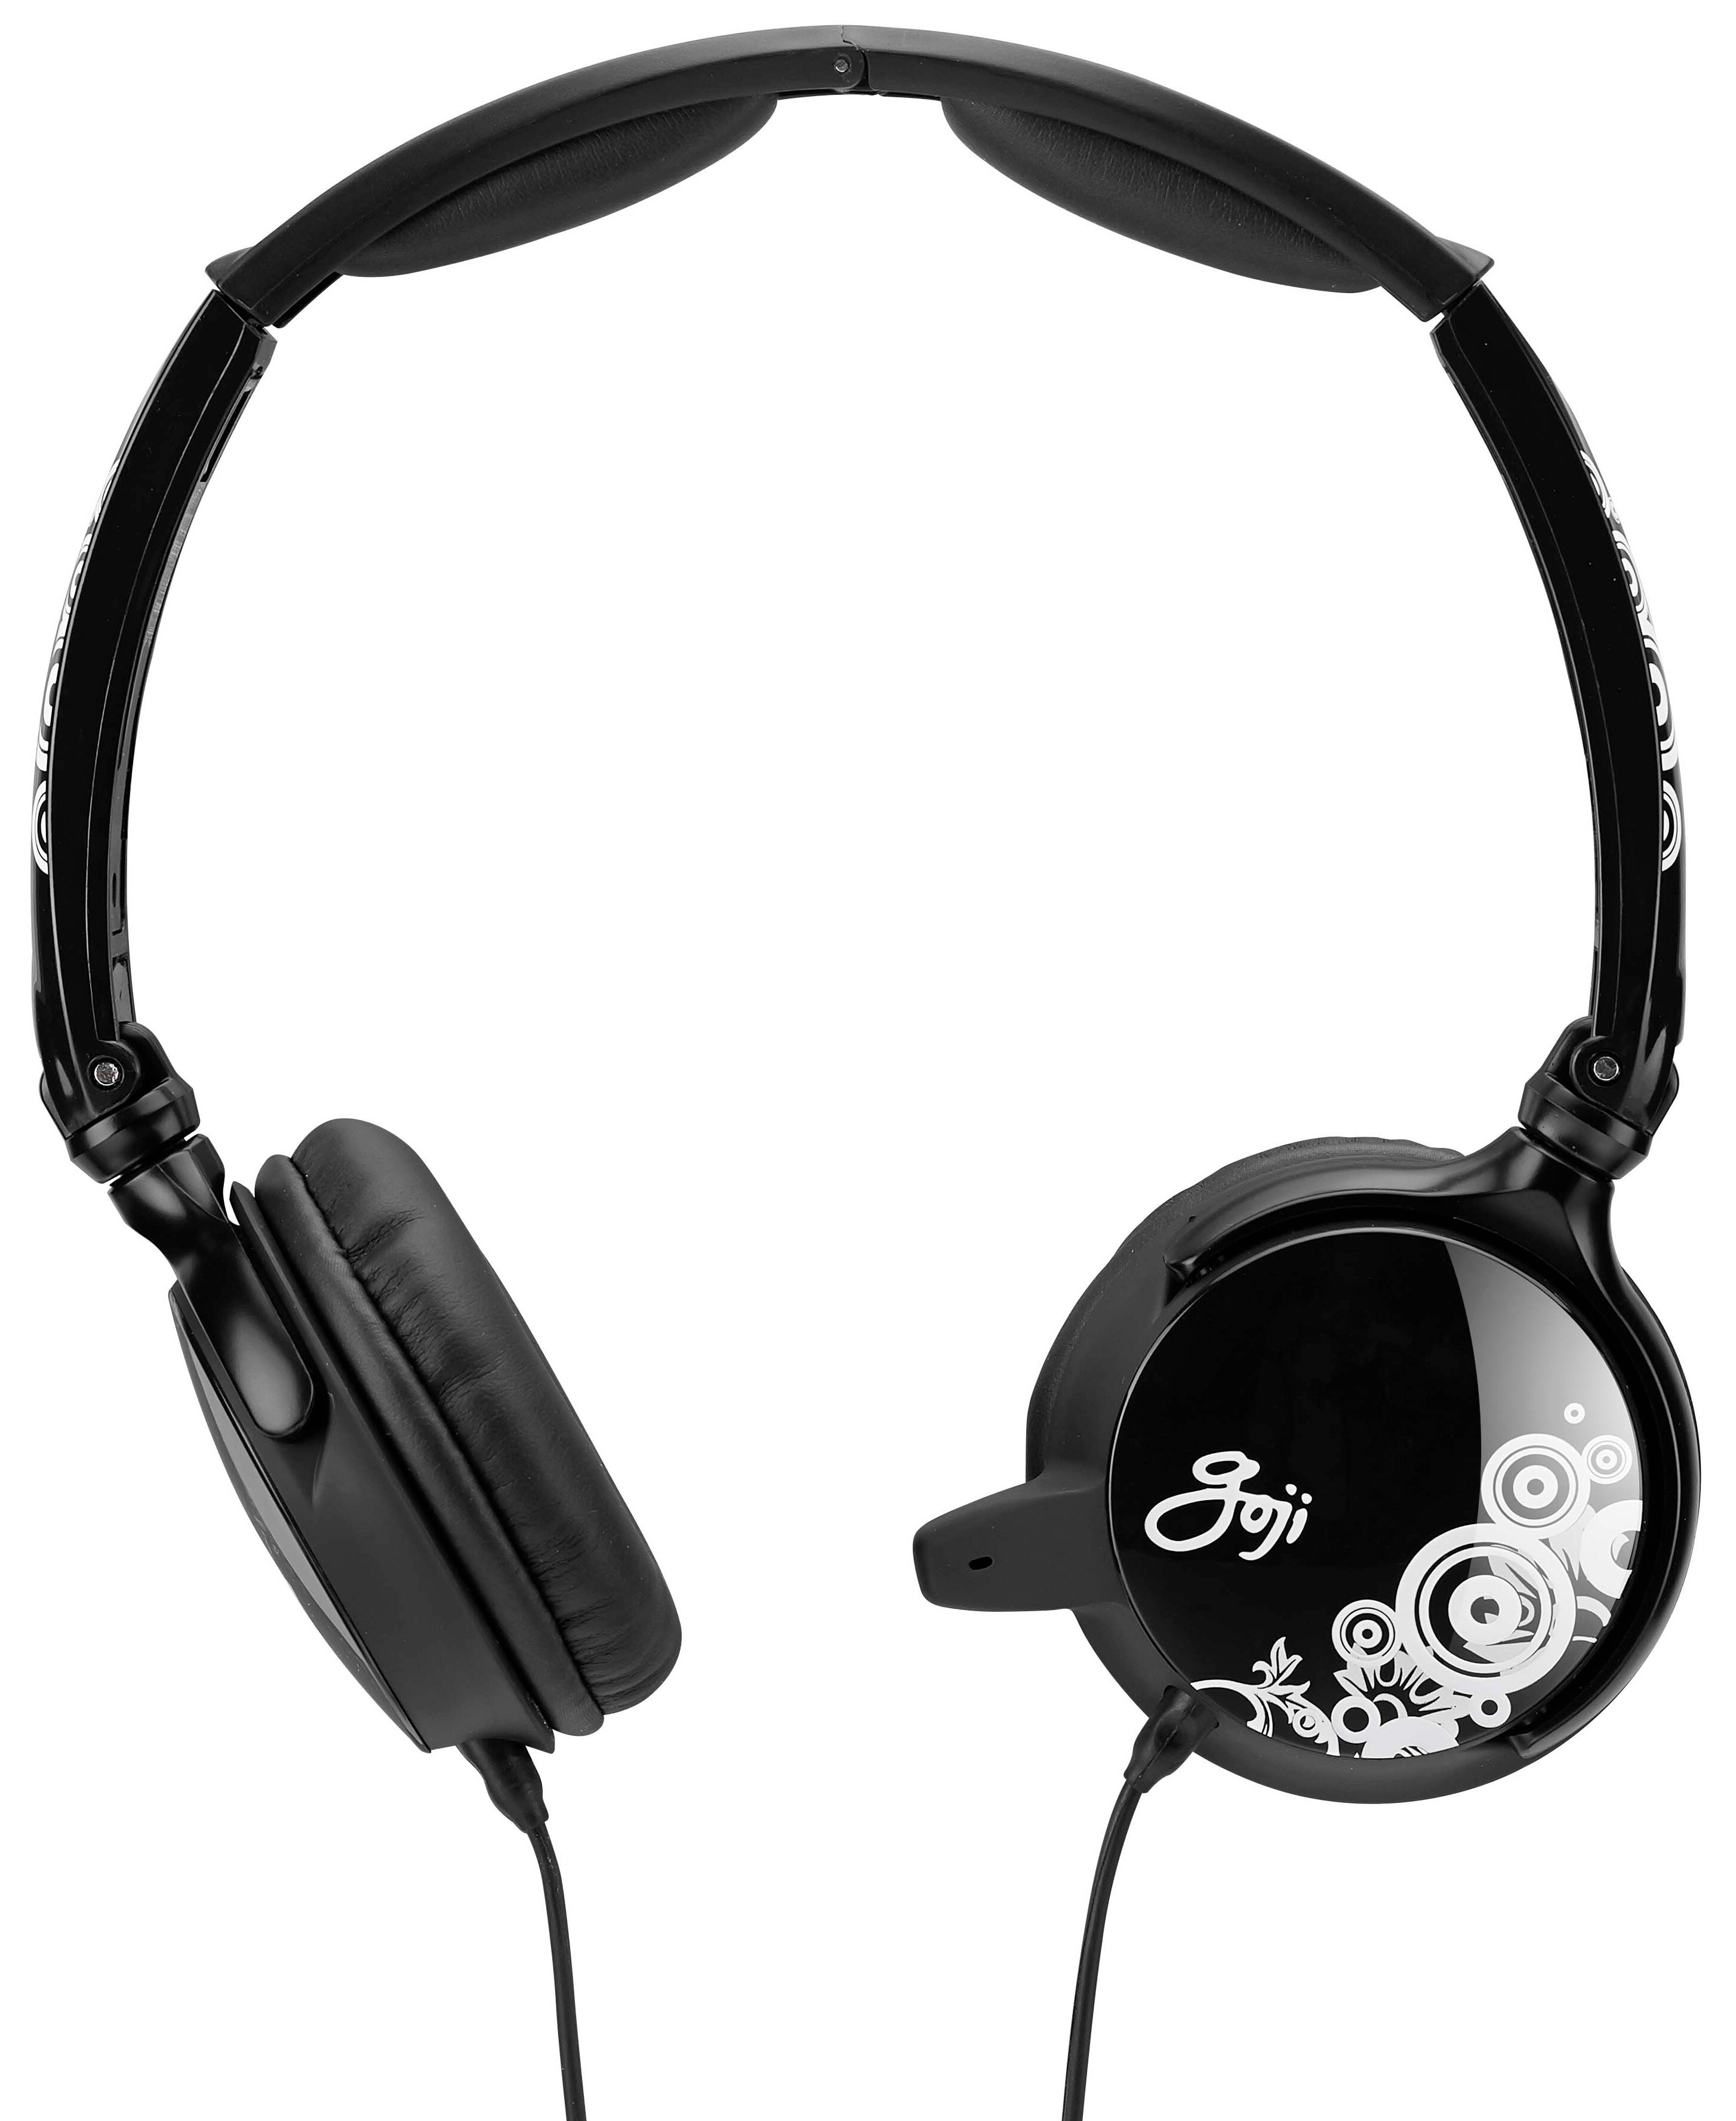 Goji OnEar headset (sort) - Headset med mikrofon - Elkjøp